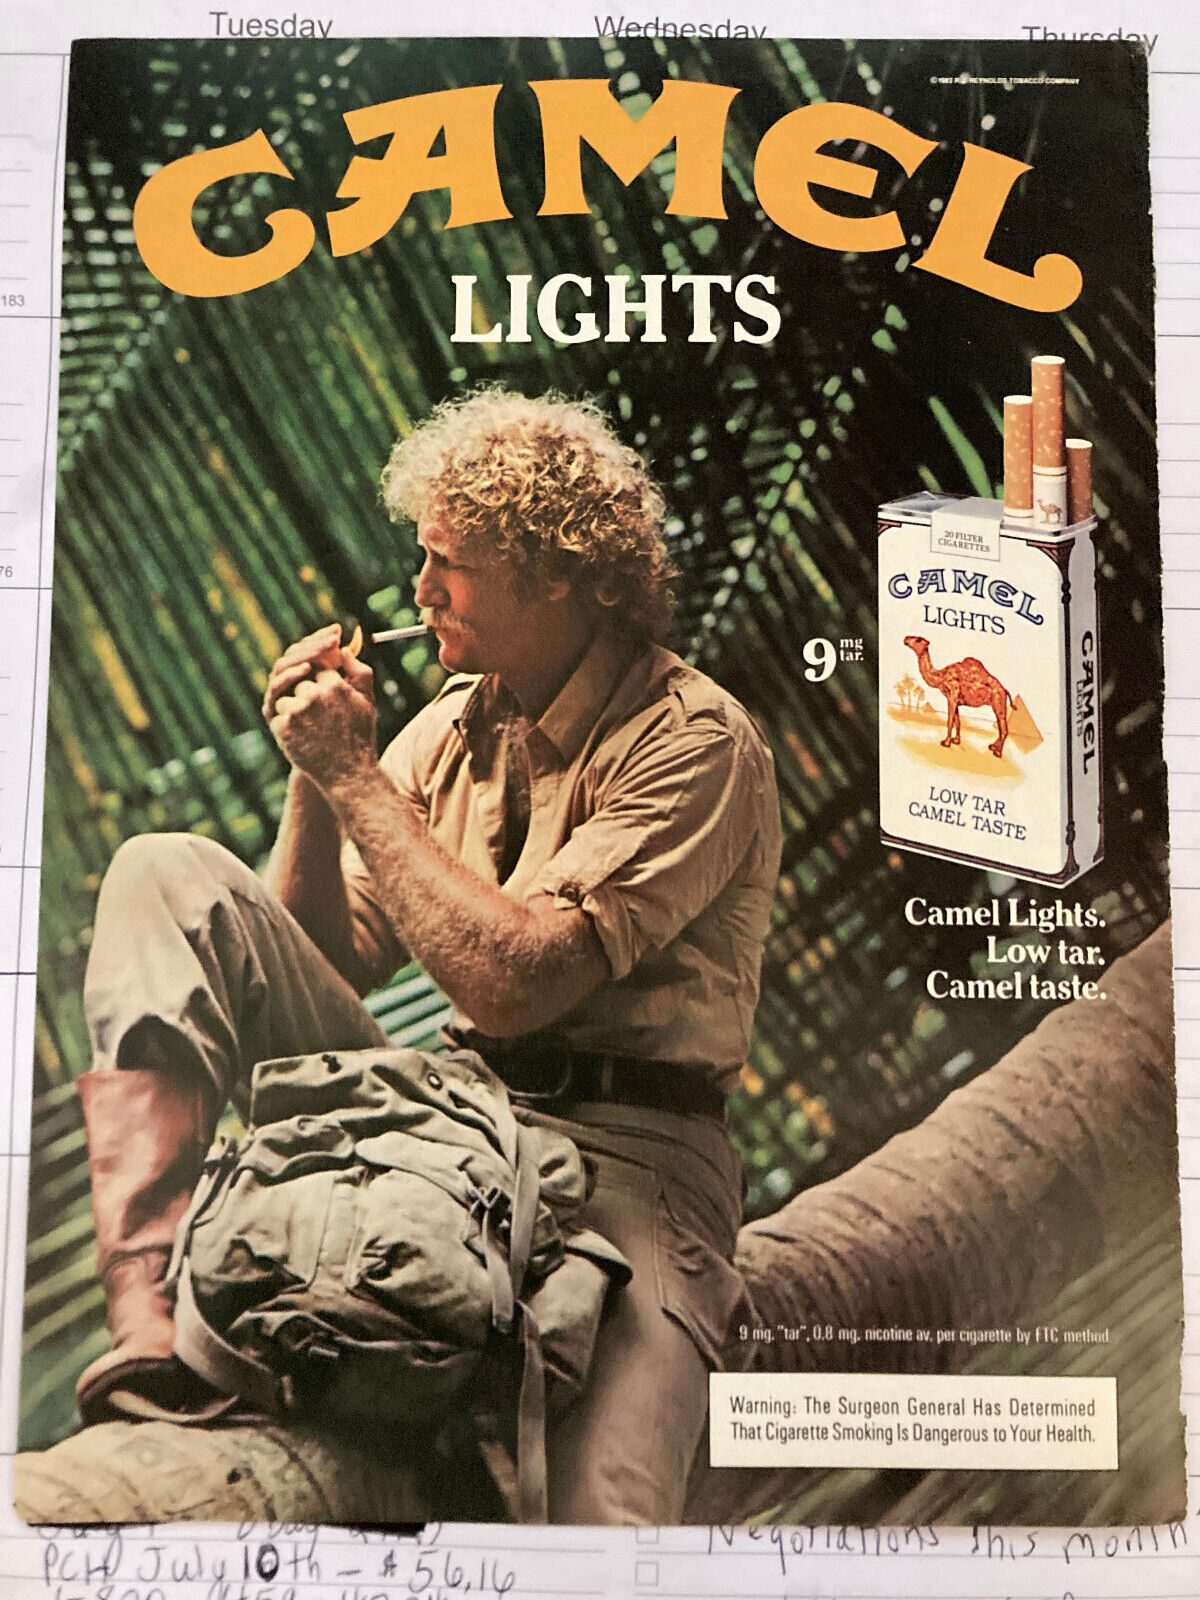 Camel Lights Camel Lights Low Tar Camel Taste Ad